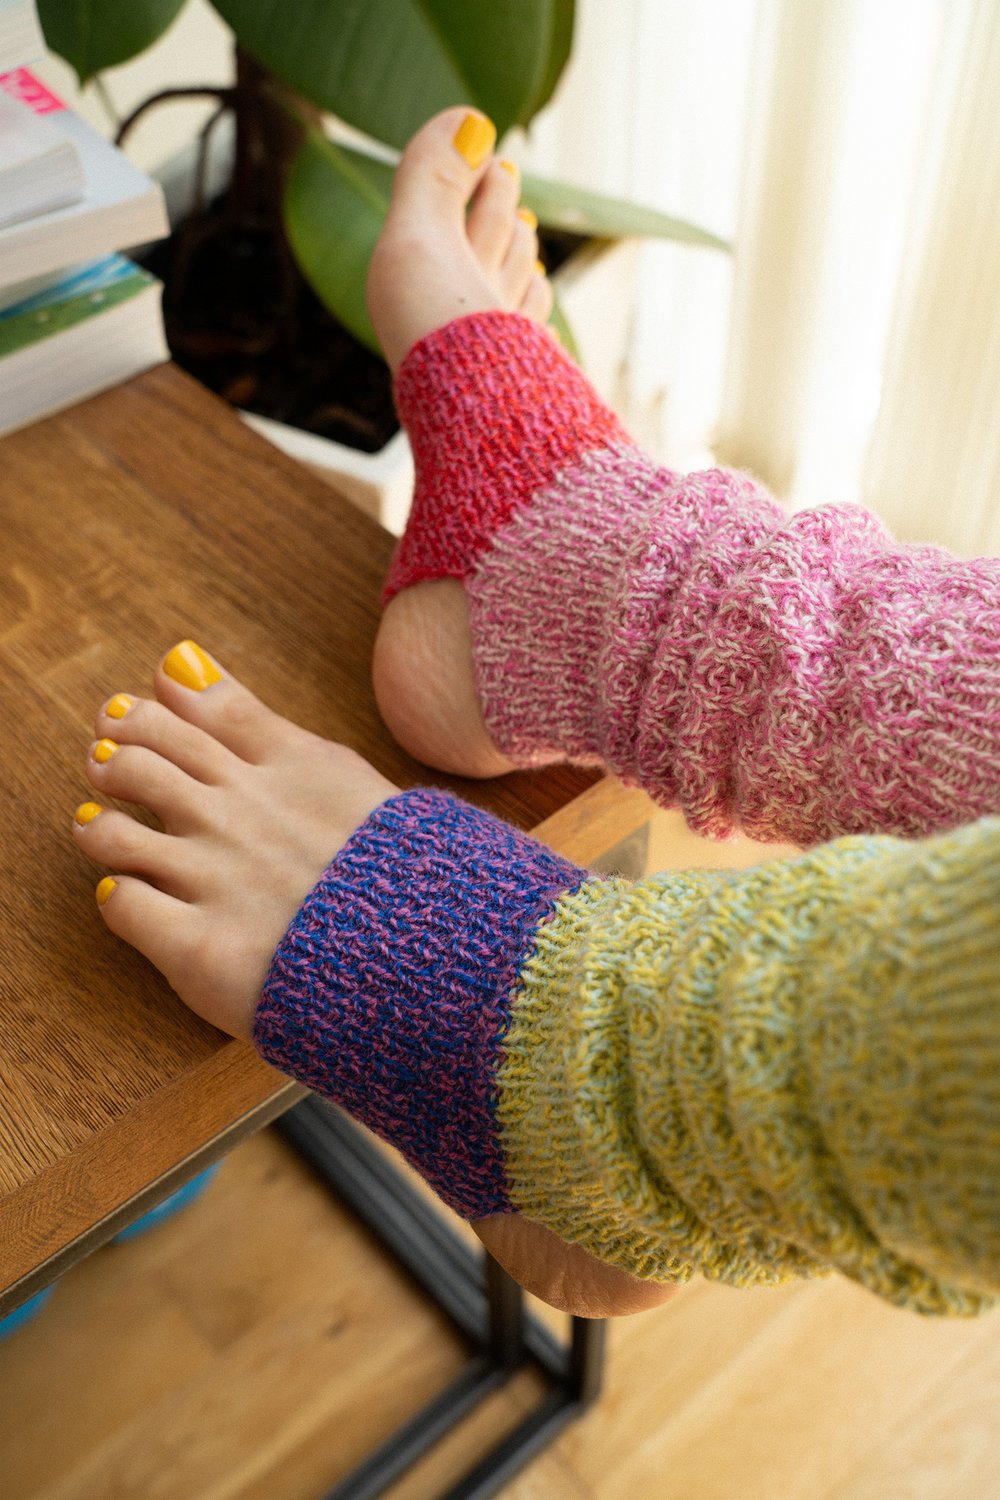 Midnight yoga club socks knitting pattern — ARA STELLA